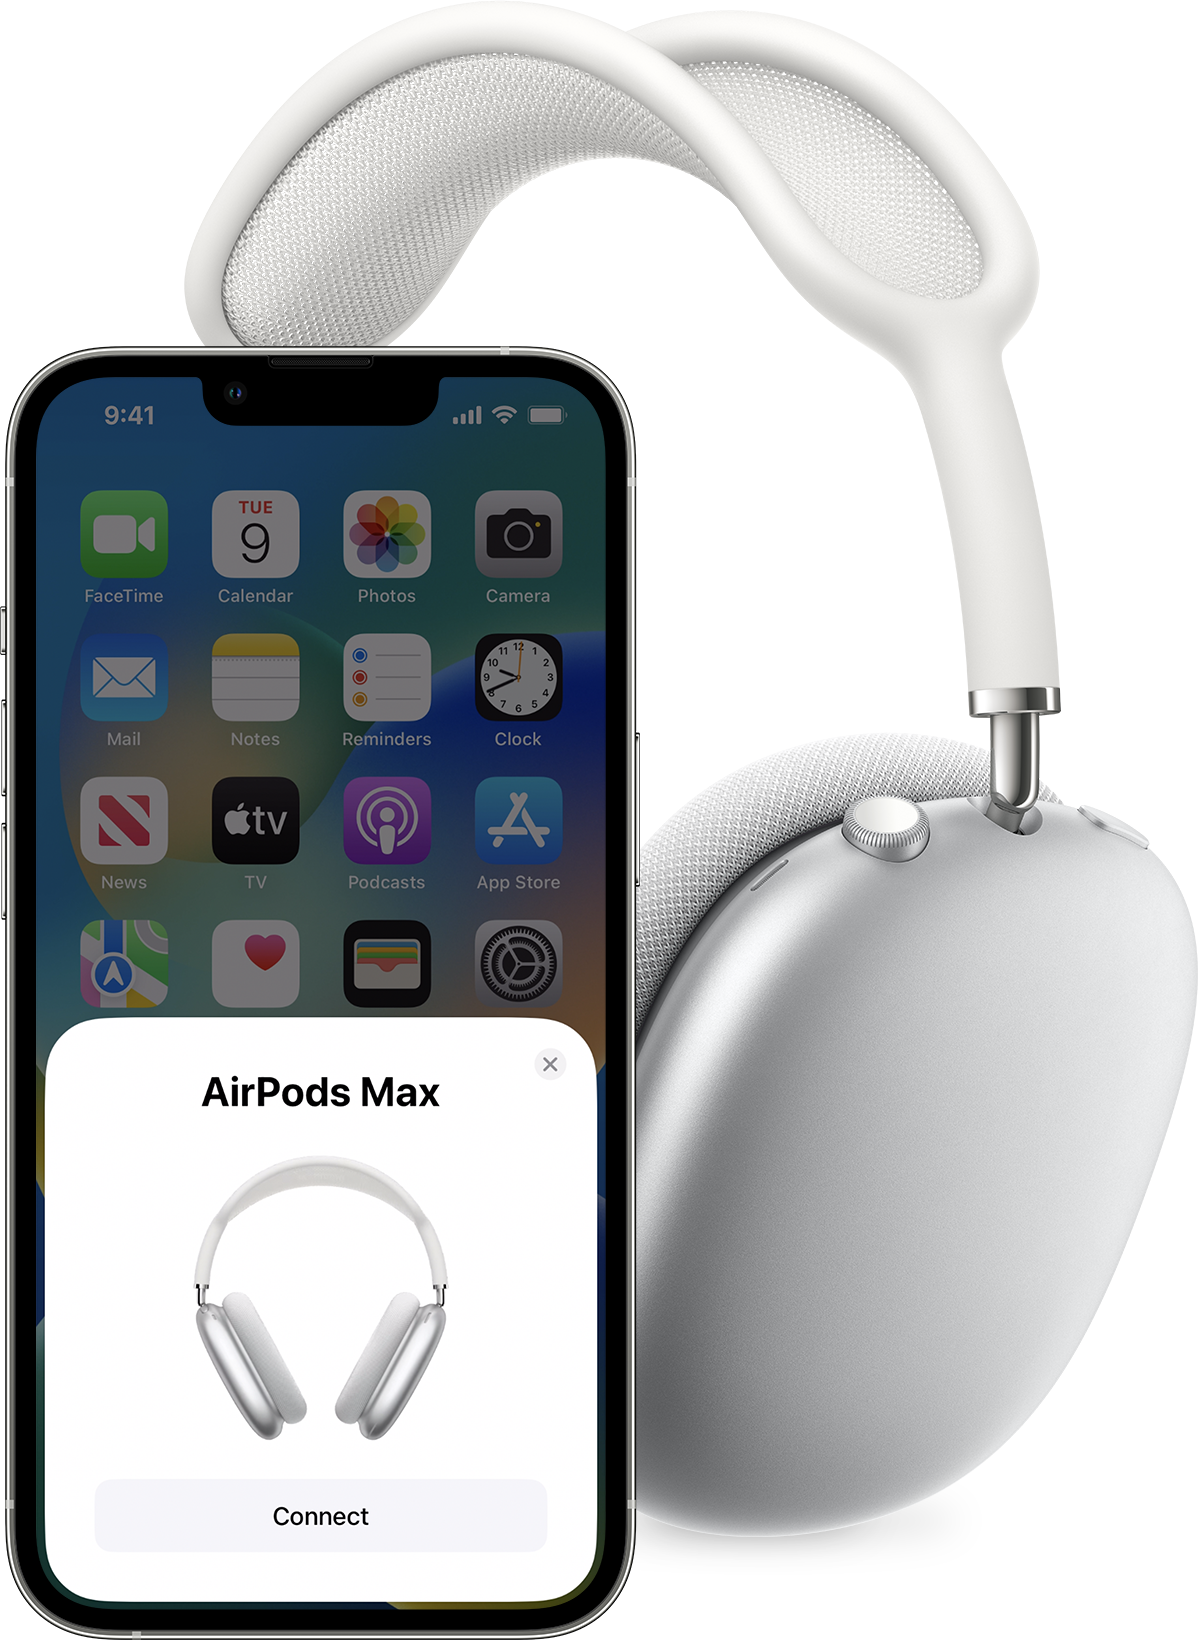 Configuración de los AirPods Max en iOS